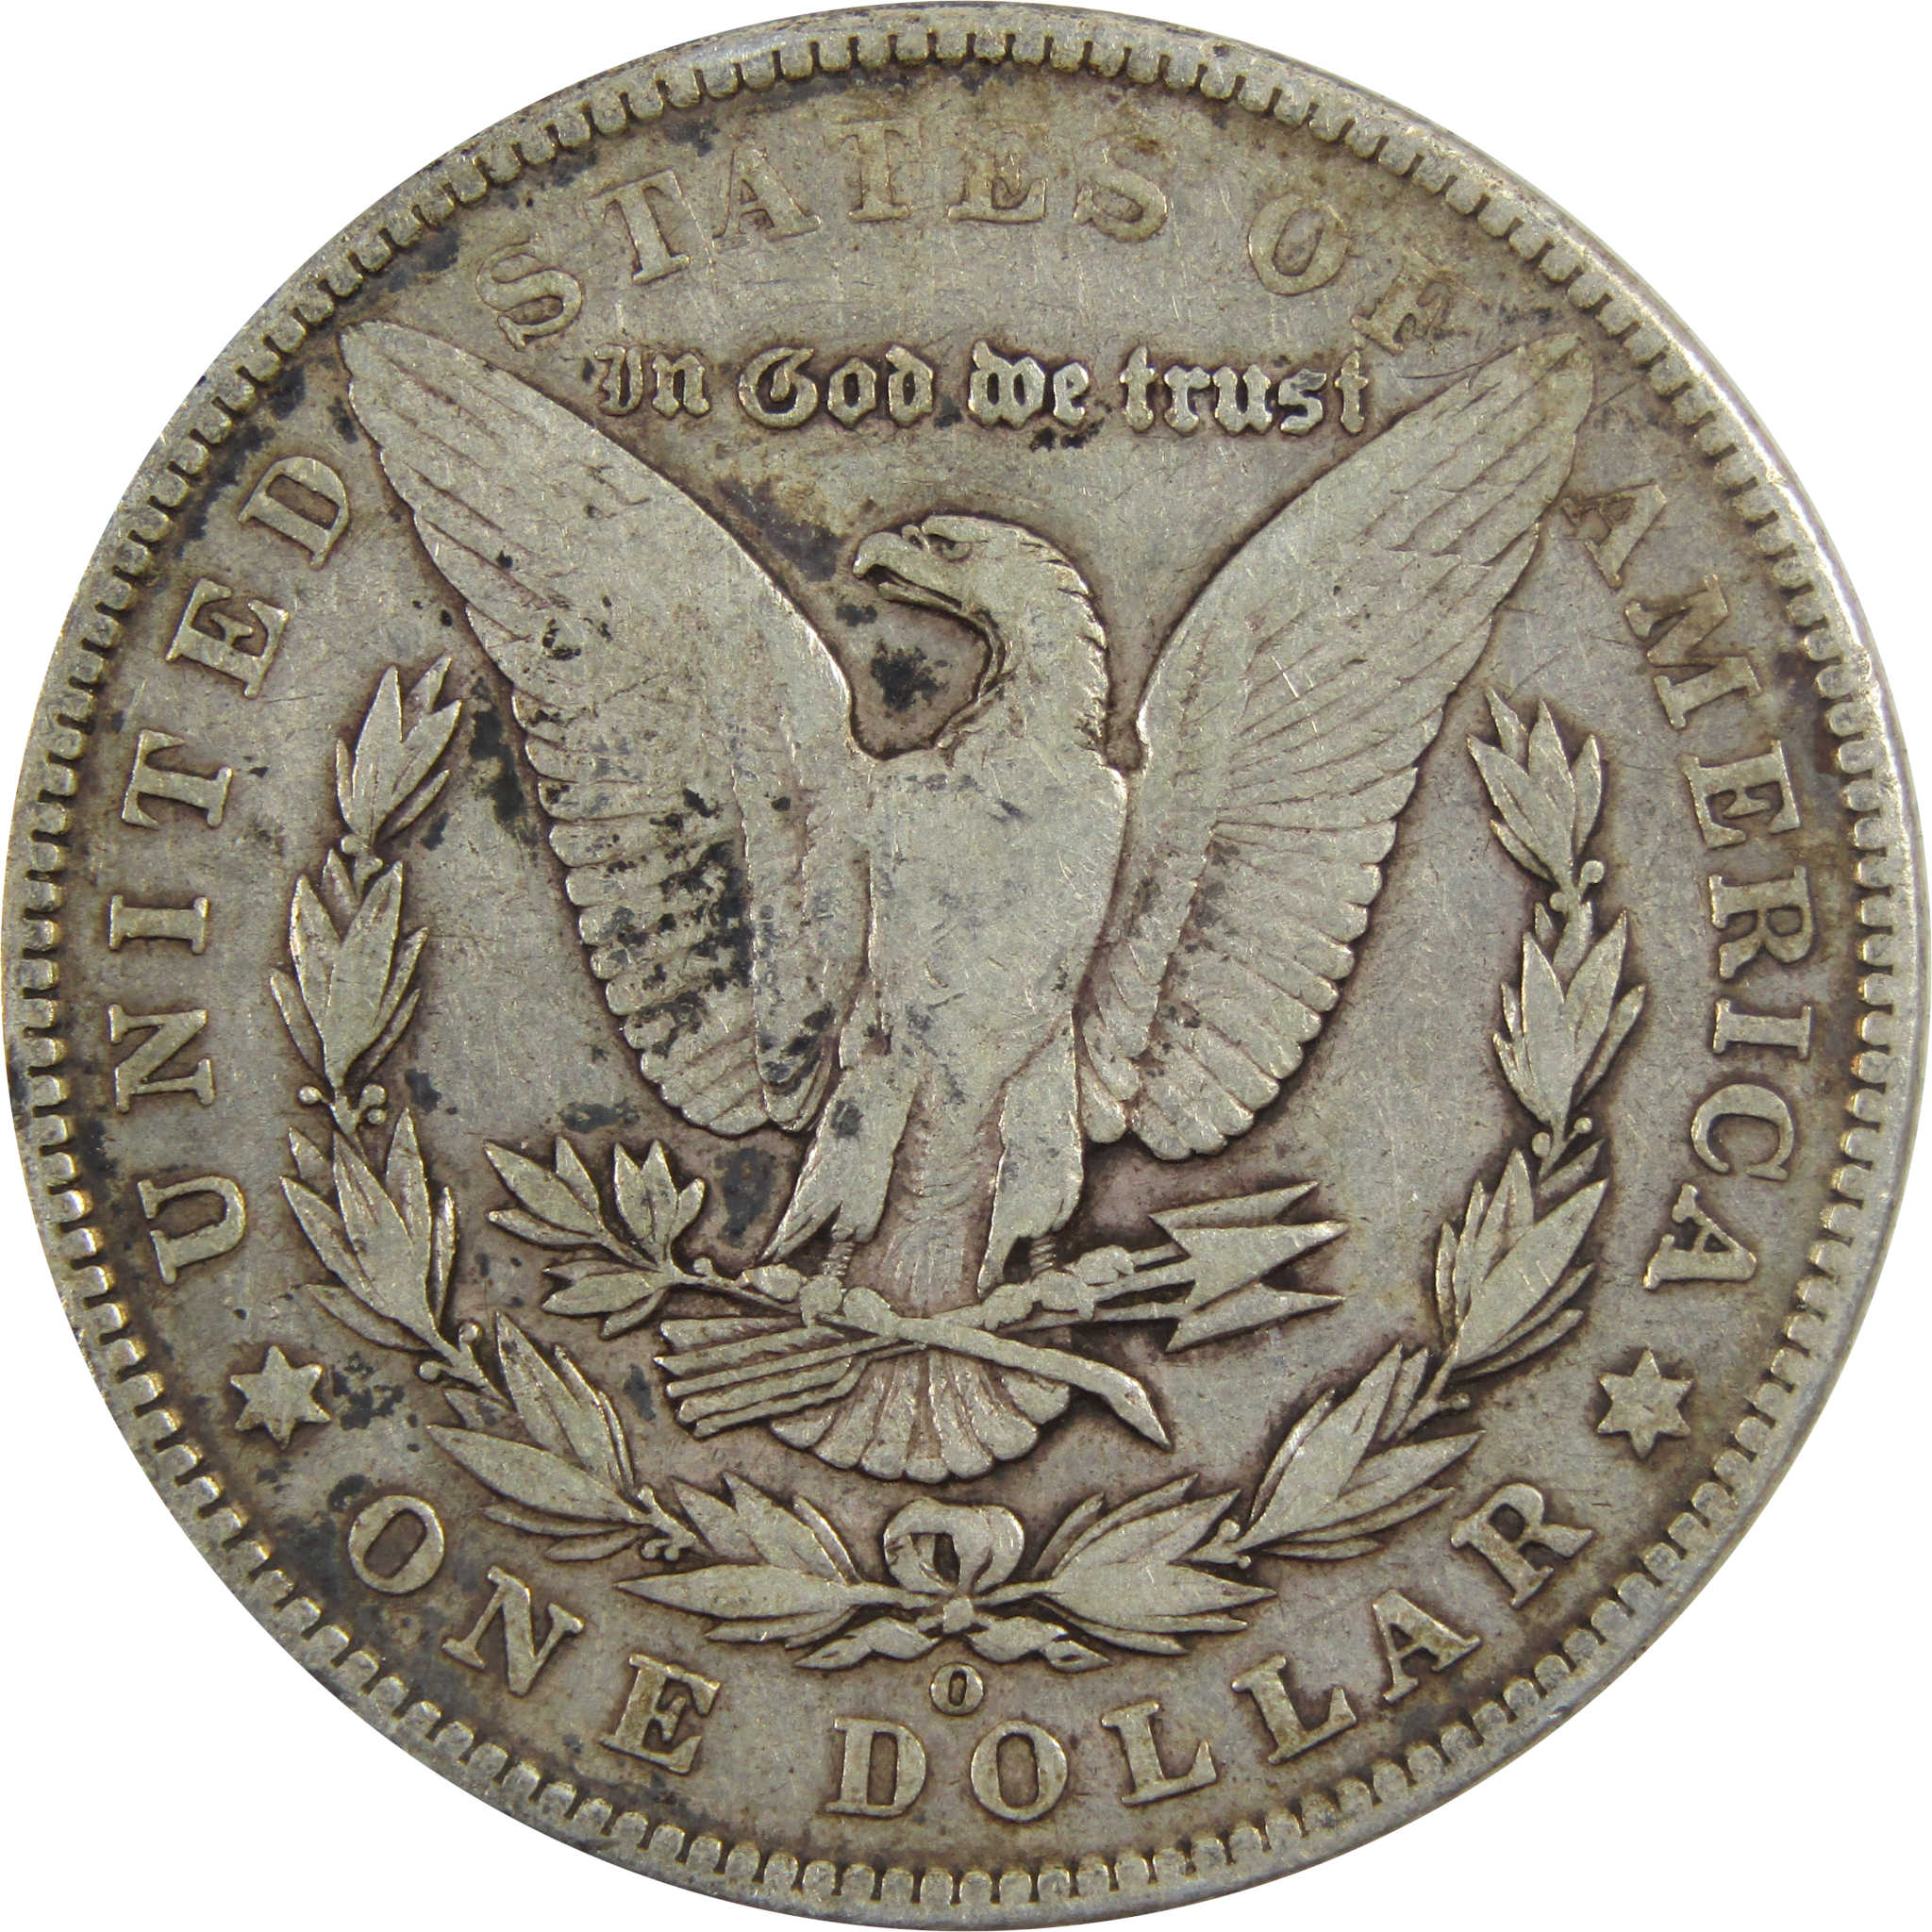 1902 O Morgan Dollar F Fine 90% Silver $1 Coin SKU:I5586 - Morgan coin - Morgan silver dollar - Morgan silver dollar for sale - Profile Coins &amp; Collectibles